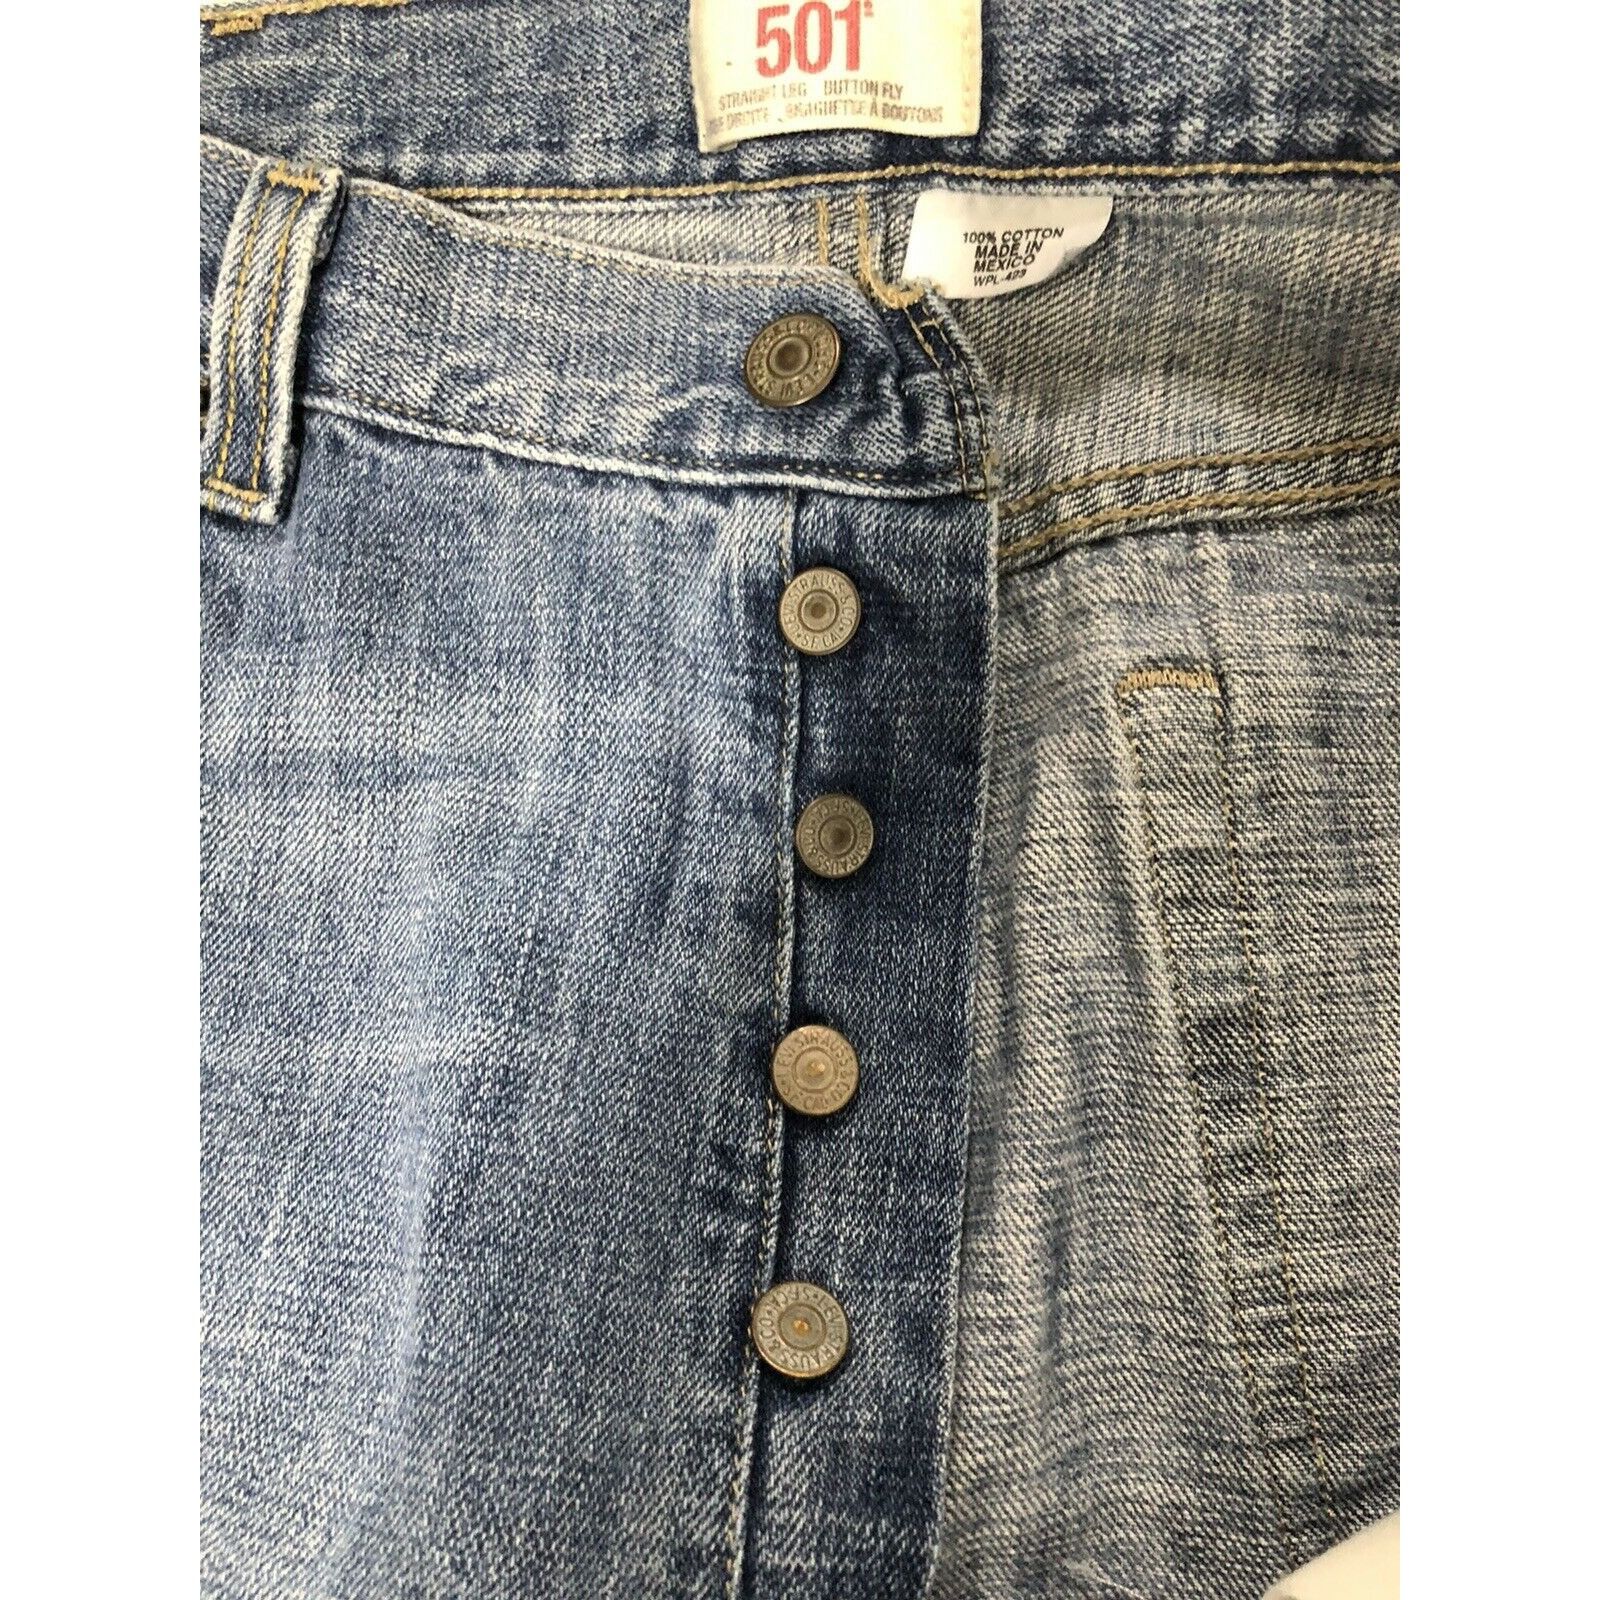 Levi's Vintage Levi Strauss XX 501 Men’s 38x34 Blue Denim Jeans Size US 38 / EU 54 - 8 Preview